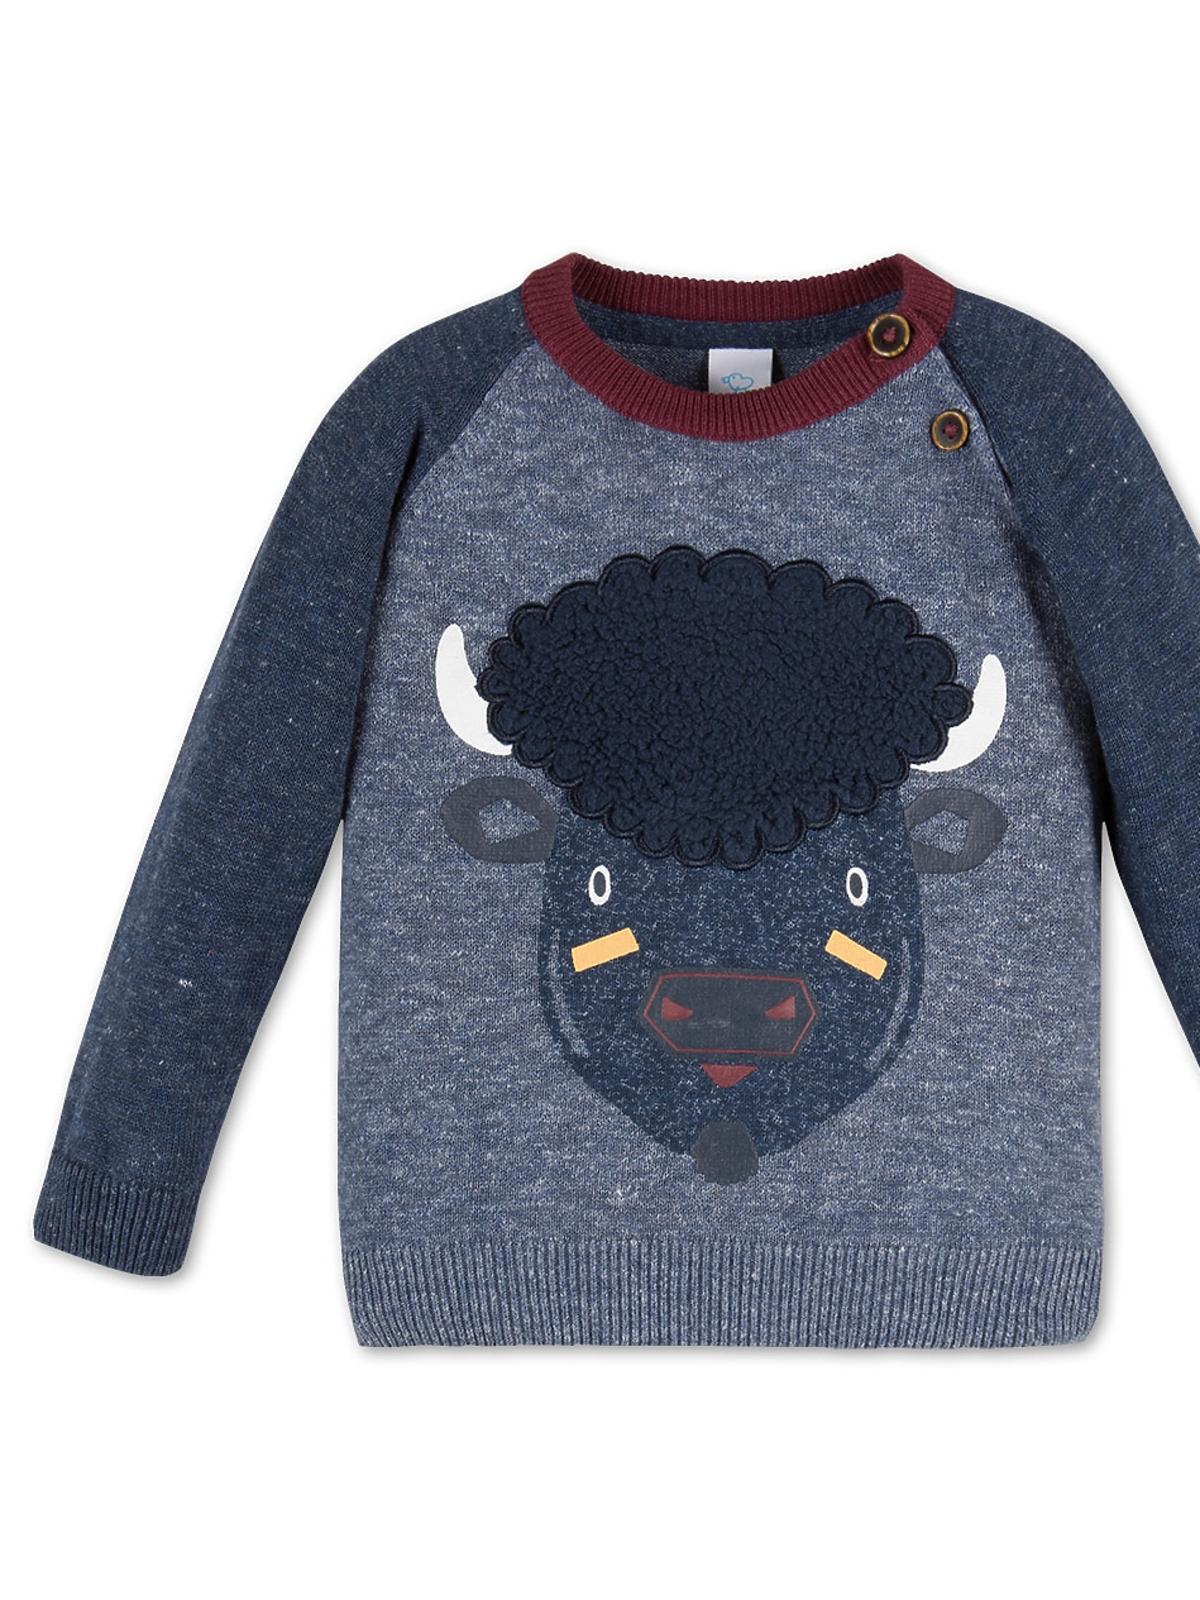 sweterek dla chłopca c&ai, ubranka dla chłopca, ubranka dla dzieci na jesień